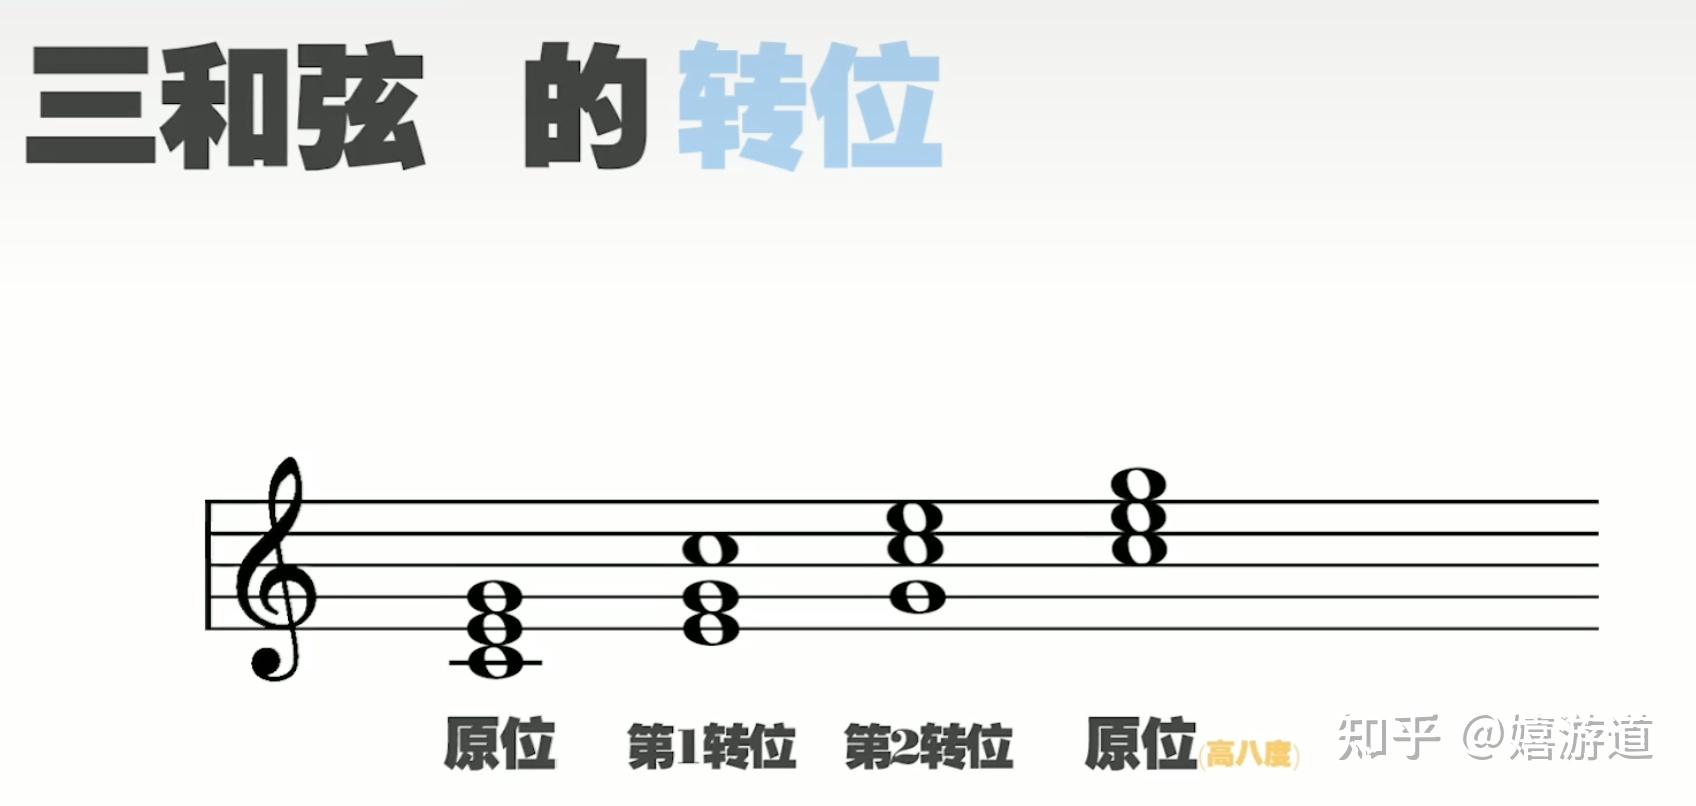 如何弹奏三和弦 [1]: 在 1-3 弦上弹奏大三和弦 - 知乎